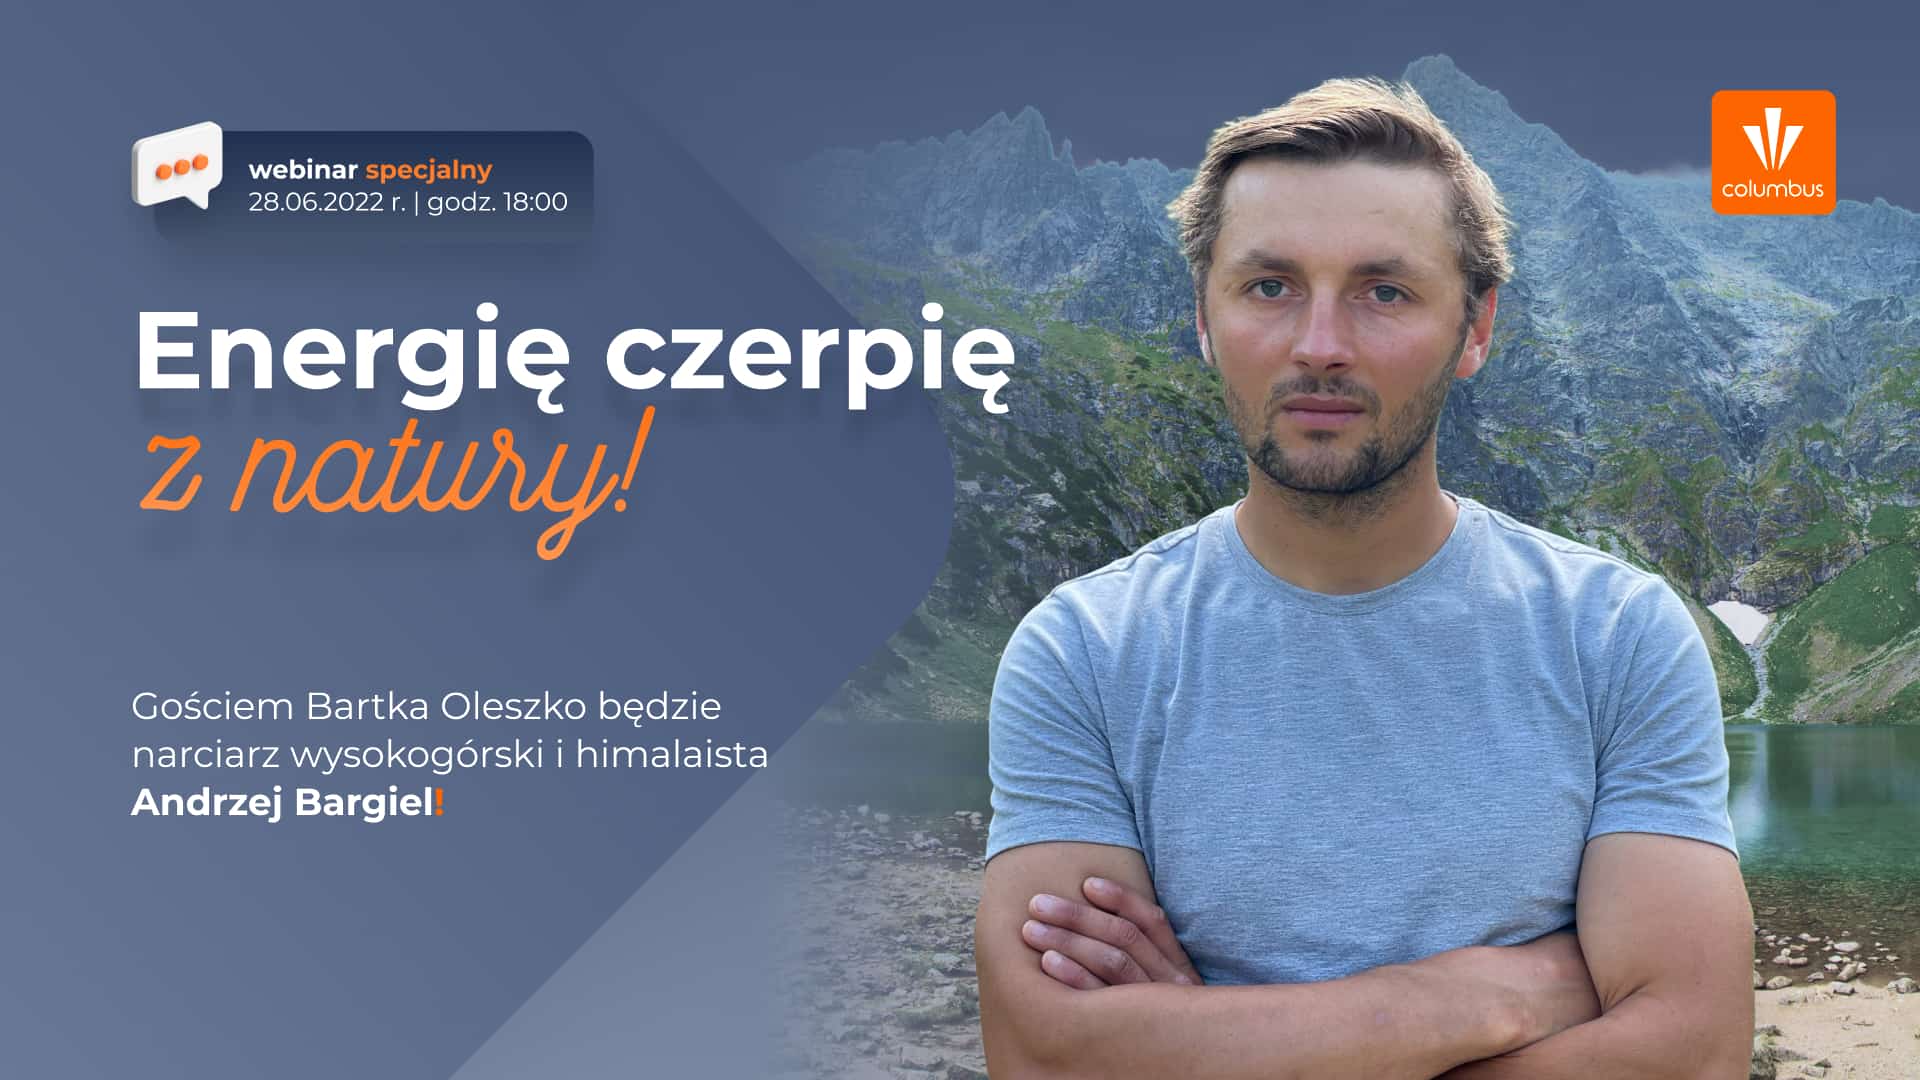 Energię czerpię z natury! Webinar z Andrzejem Bargielem